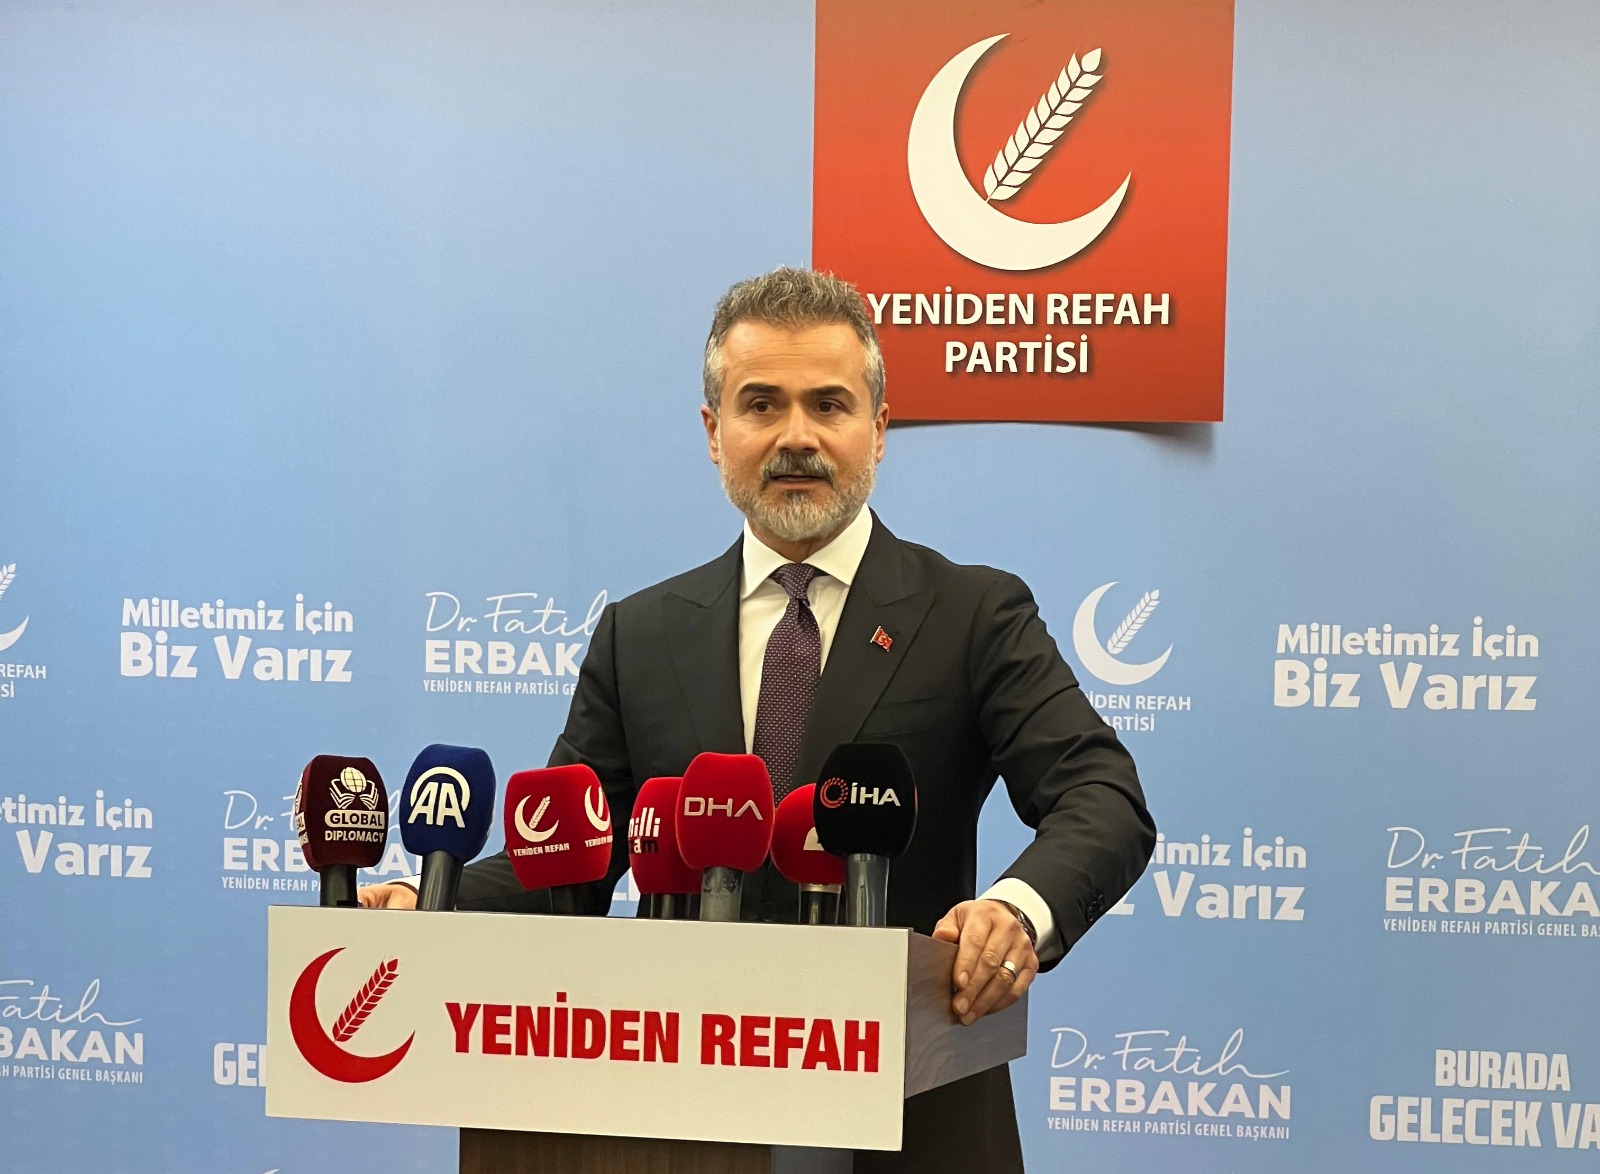 Yeniden Refah Partisi Konya’da ‘Özgür Filistin’ mitingi düzenleyecek   